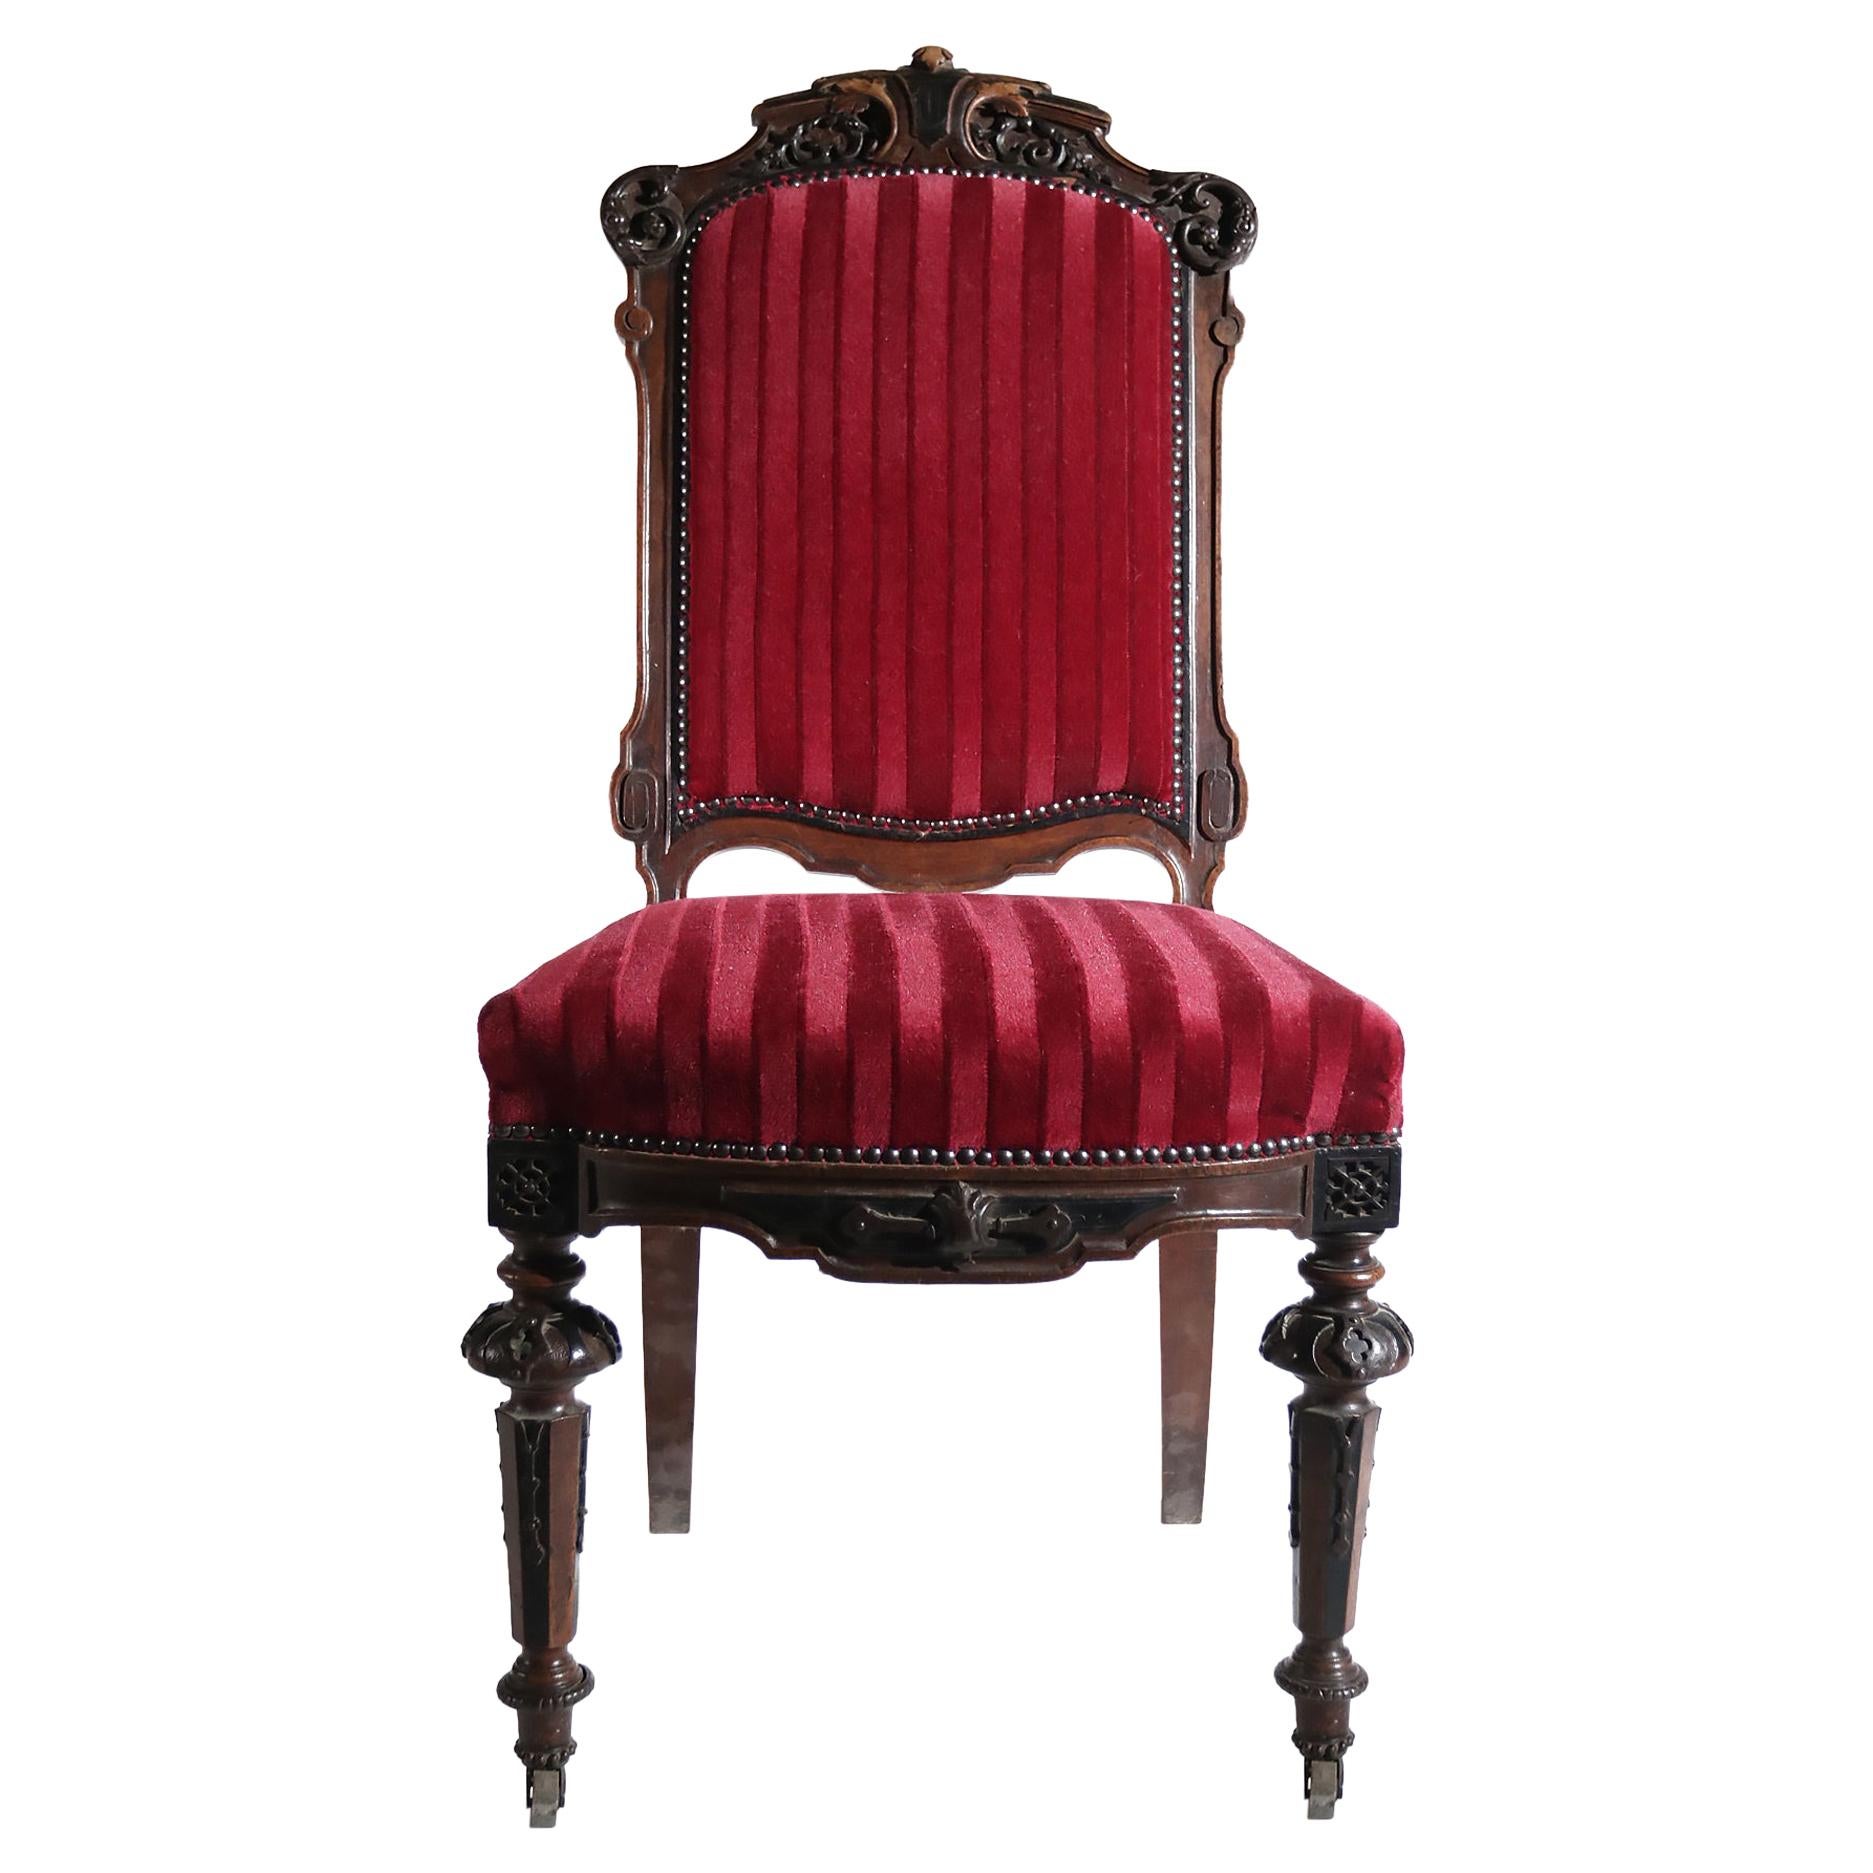 Chaise française du 19ème siècle sculptée à la main, ornements métalliques rouges velours